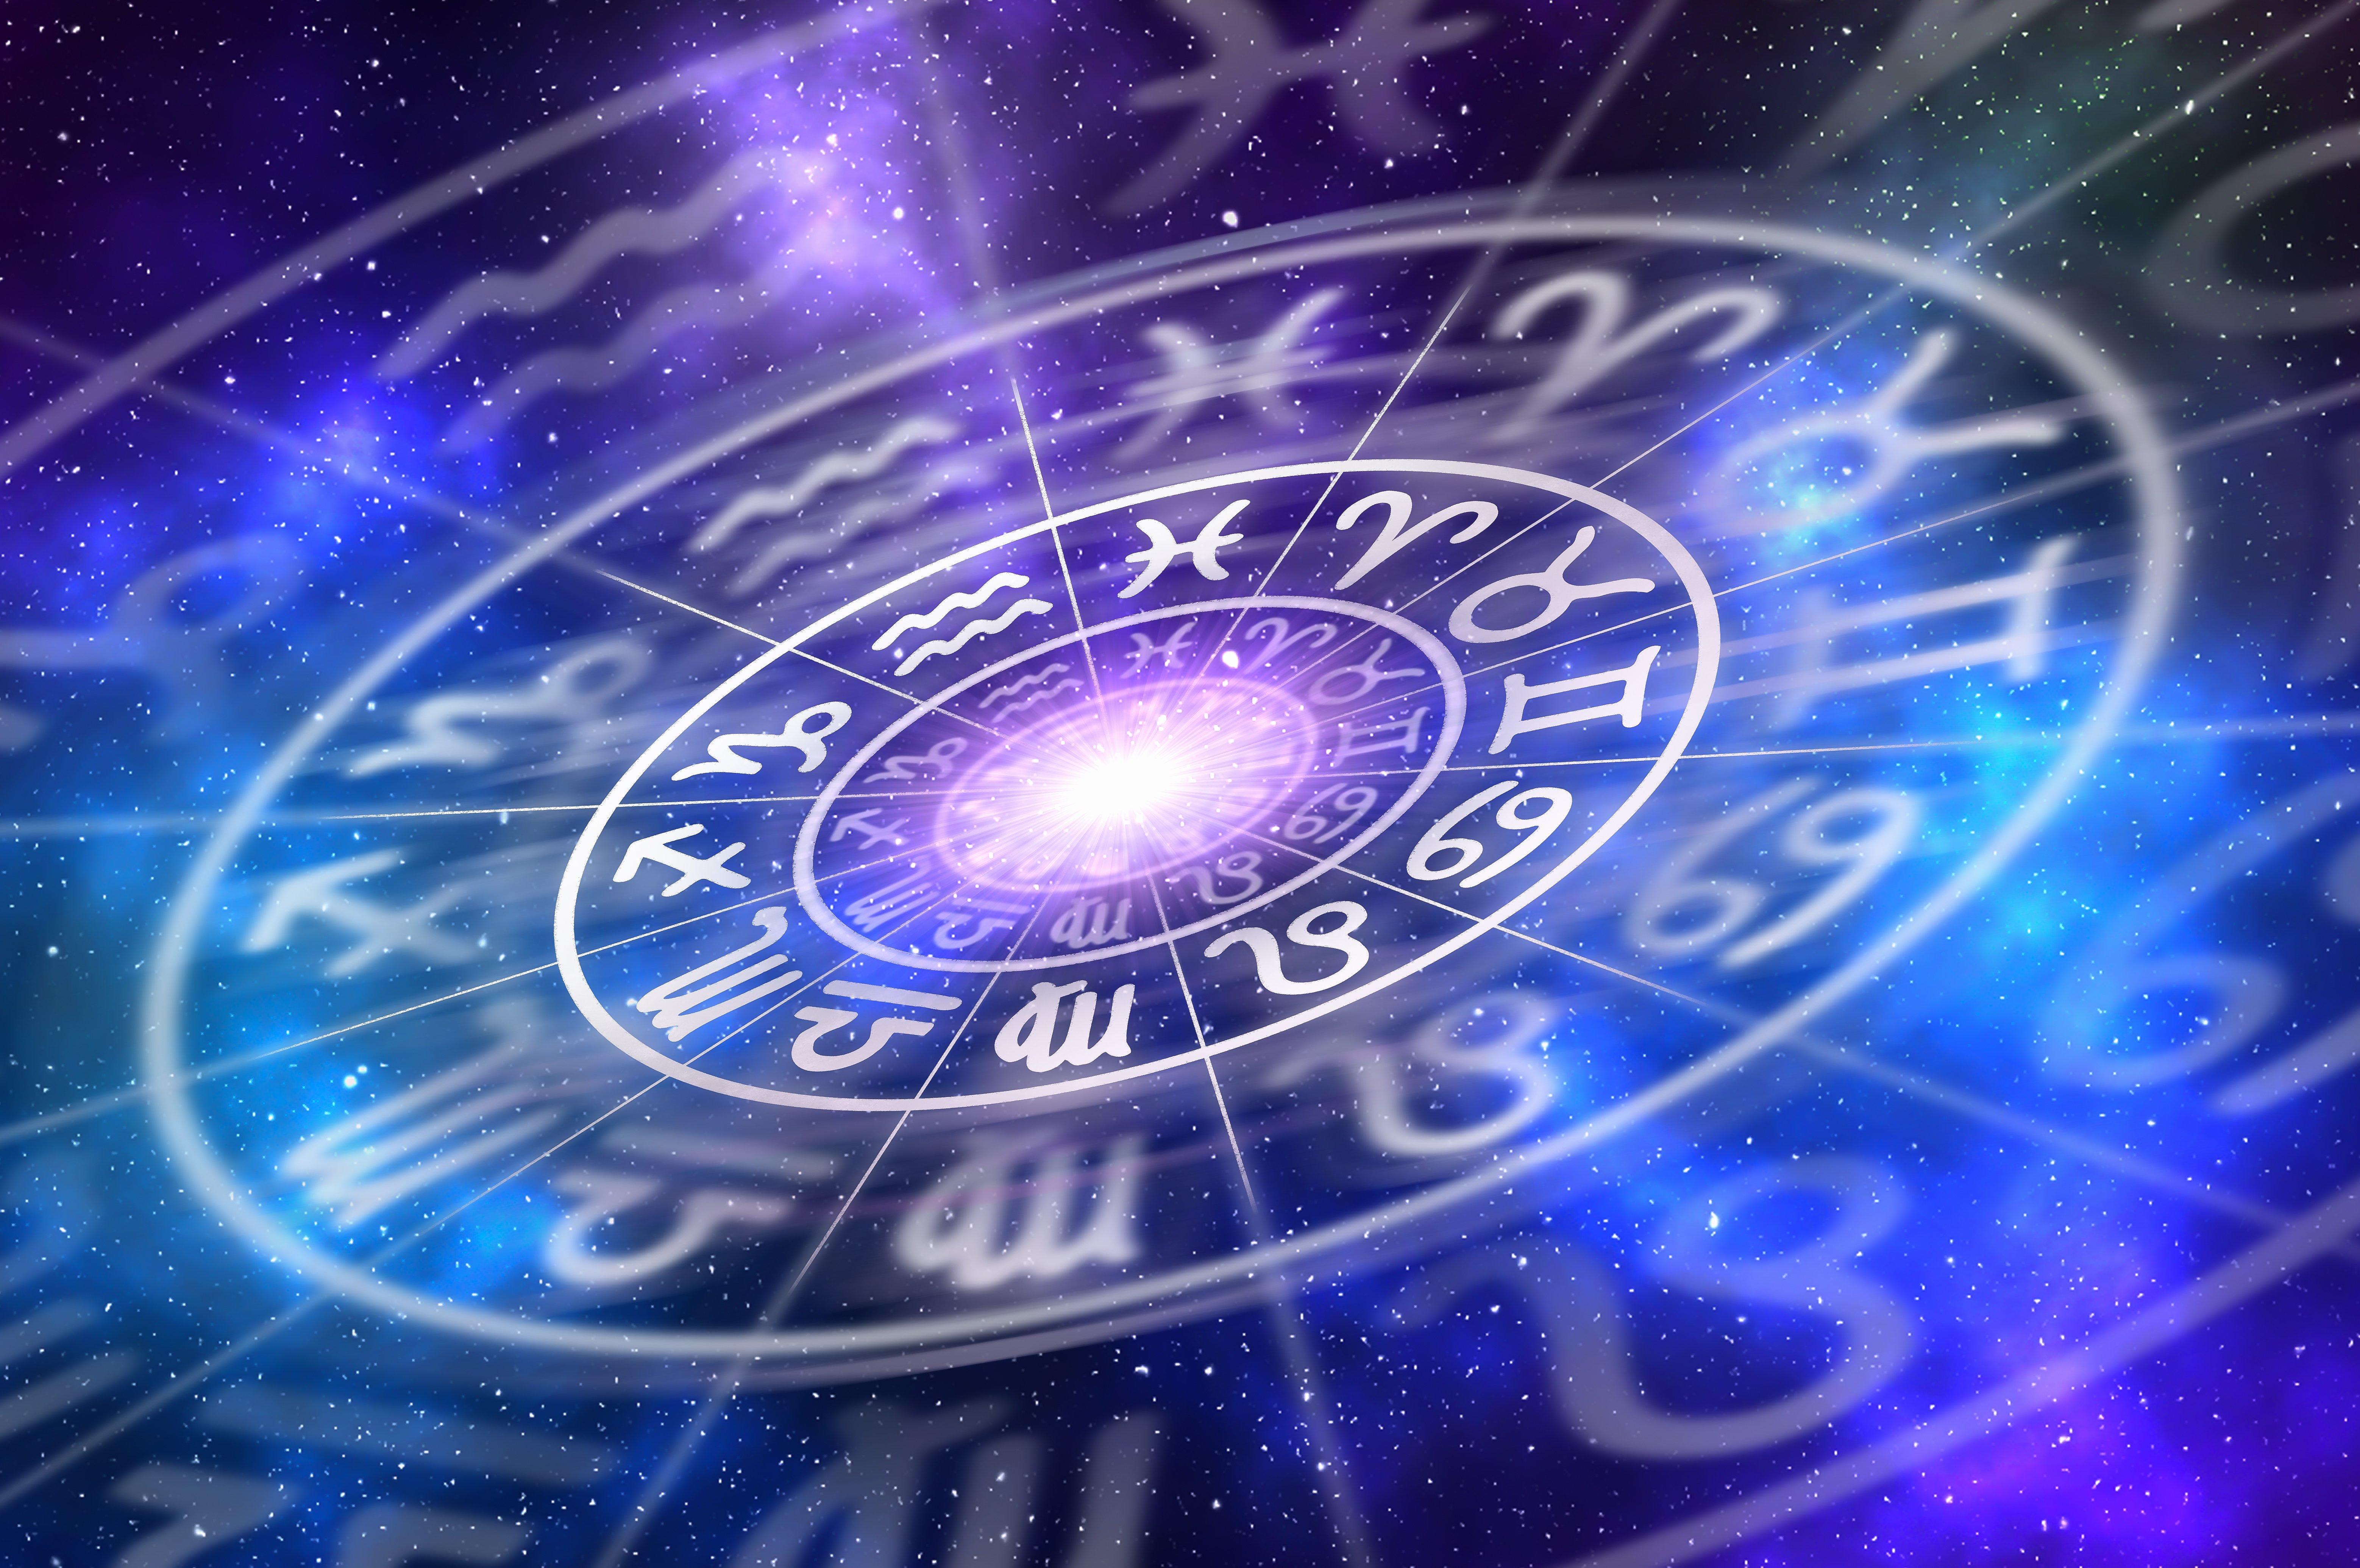 Aprender inglés online con ruedas con signos de zodiaco en el espacio, astrología y horóscopo